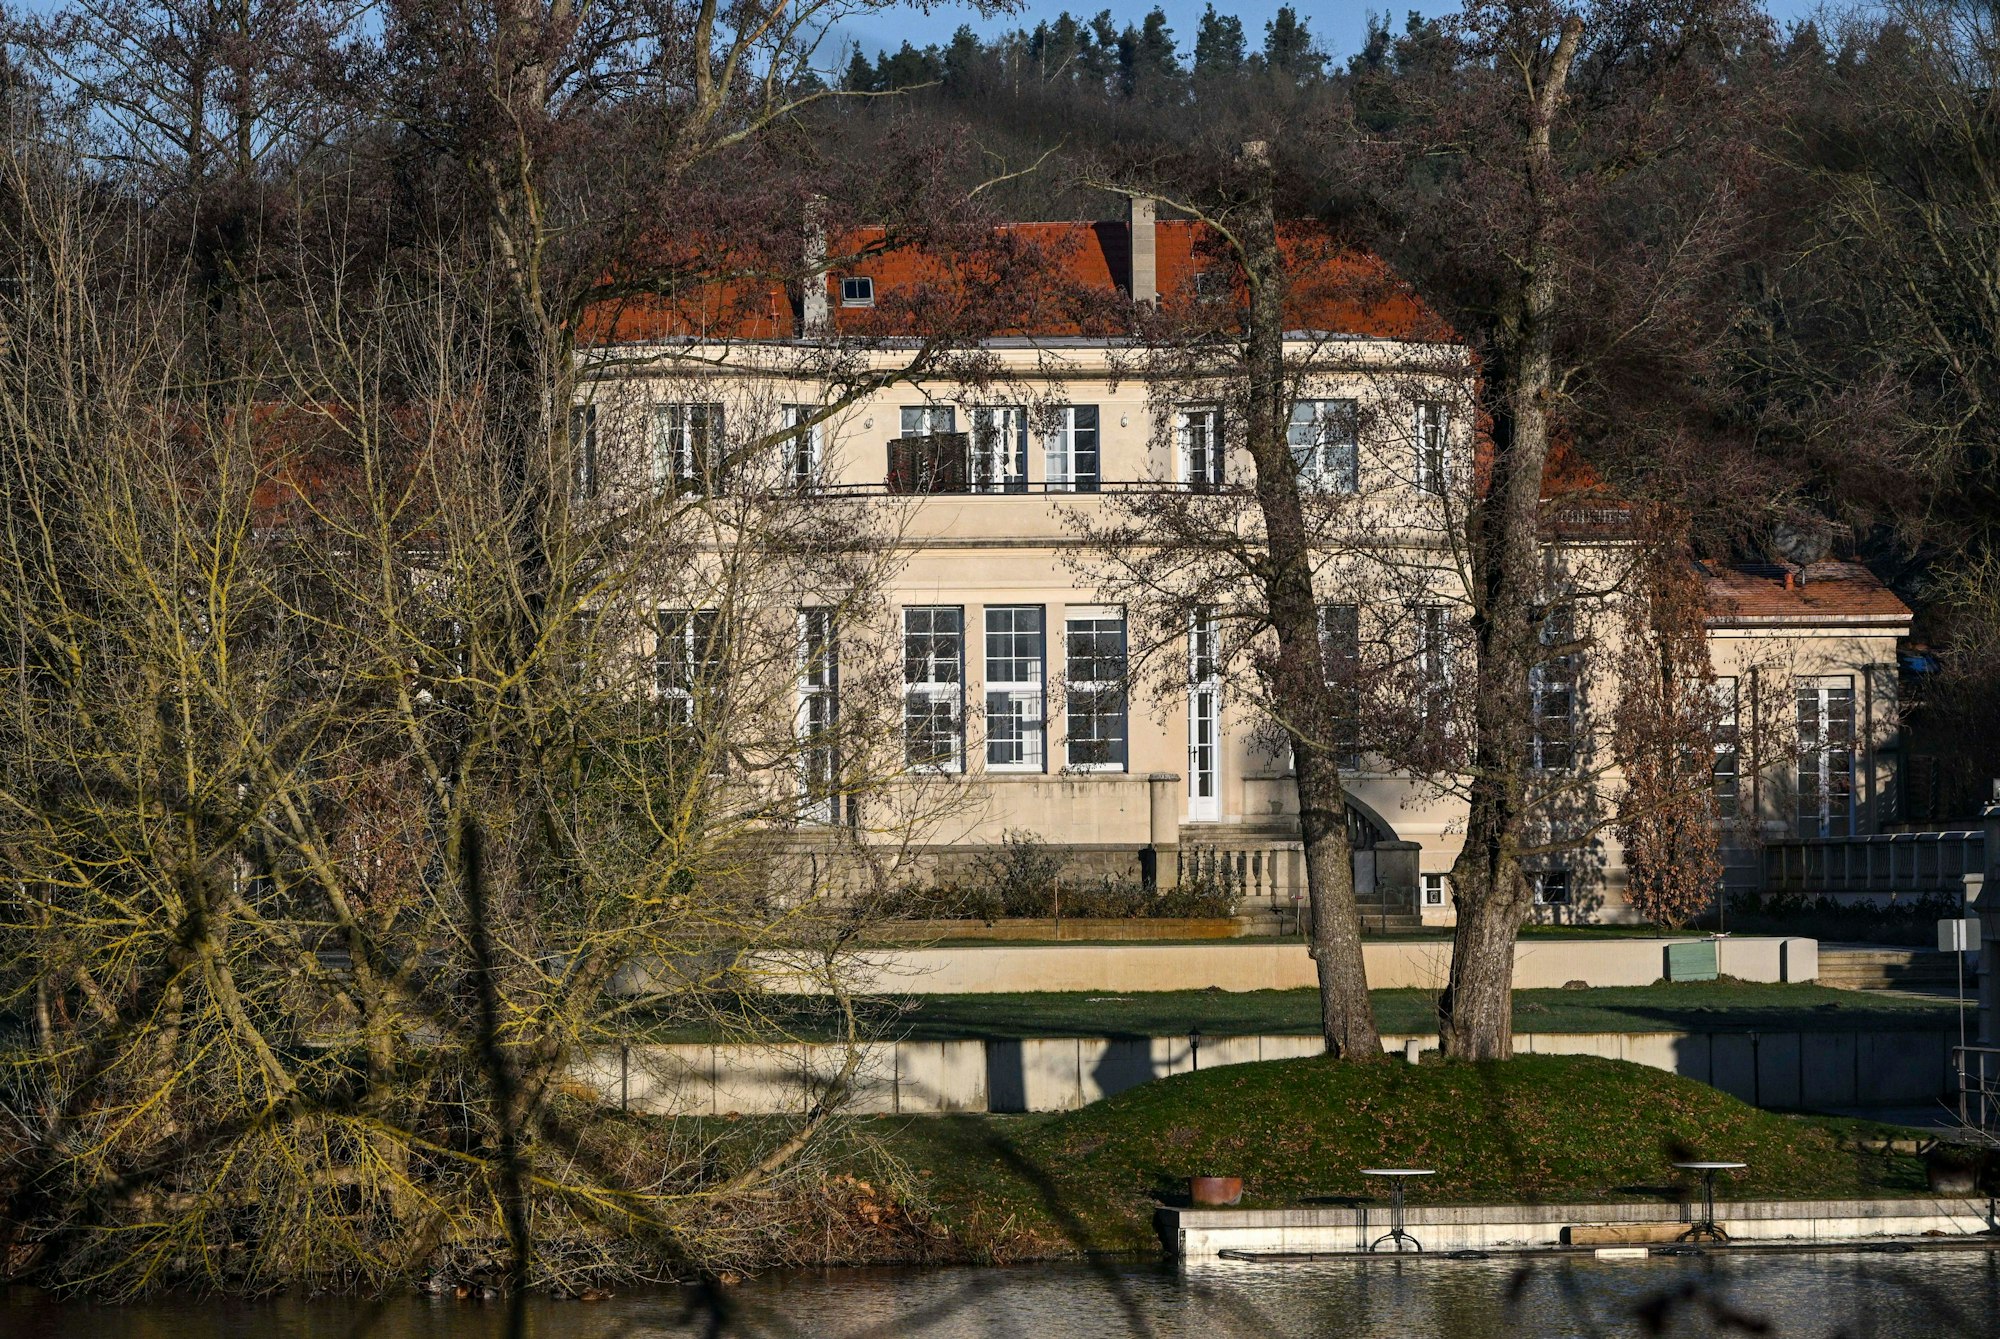 Blick auf das Gästehaus am Lehnitzsee im Potsdamer Stadtteil Neu Fahrland. Dort hatte ein Treffen radikaler Rechter stattgefunden.